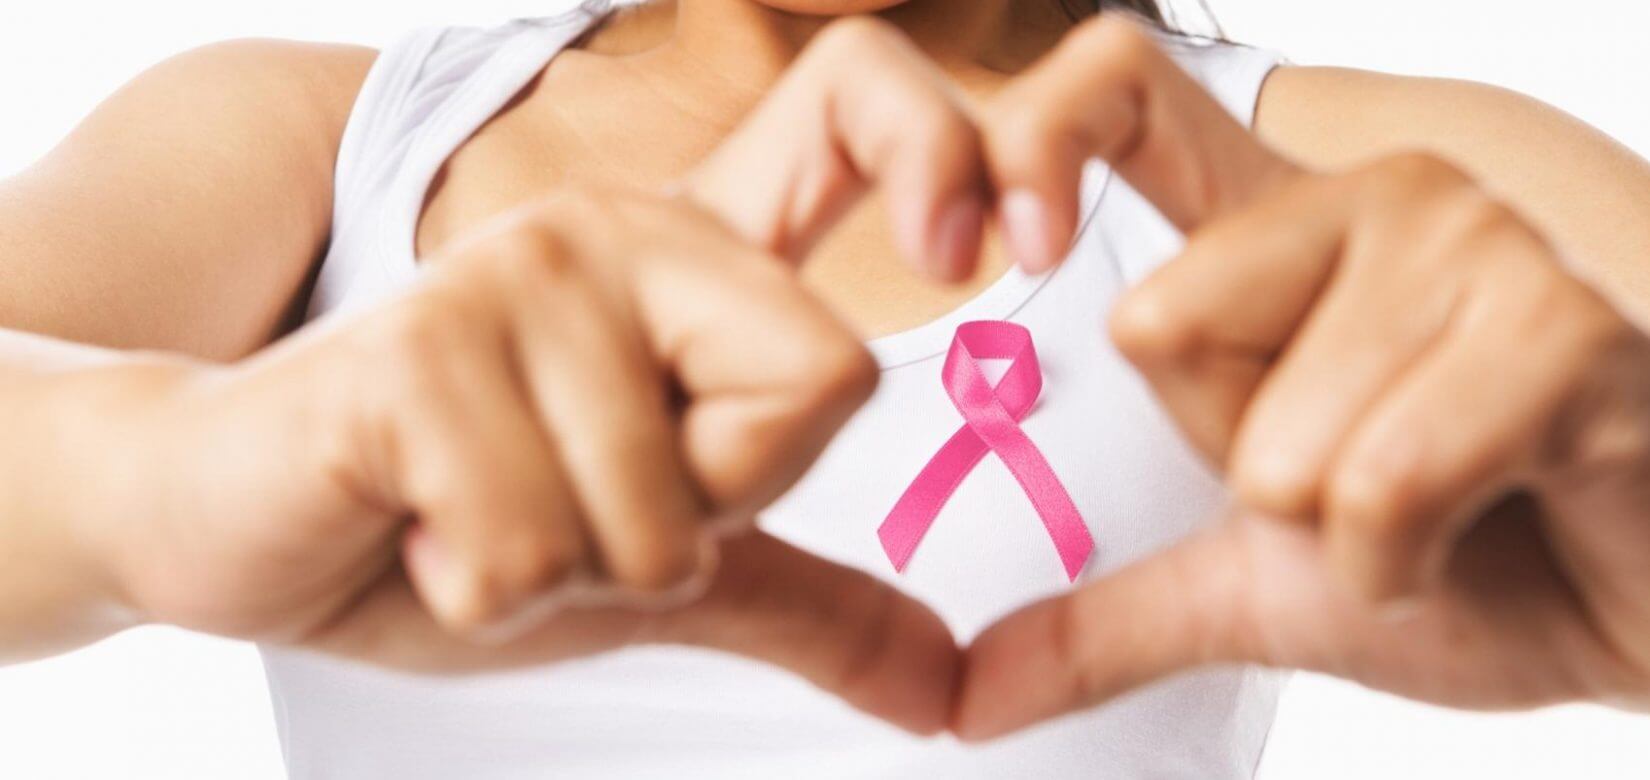 Ποιες γυναίκες δικαιούνται δωρεάν μαστογραφία - Η διαδικασία βήμα βήμα